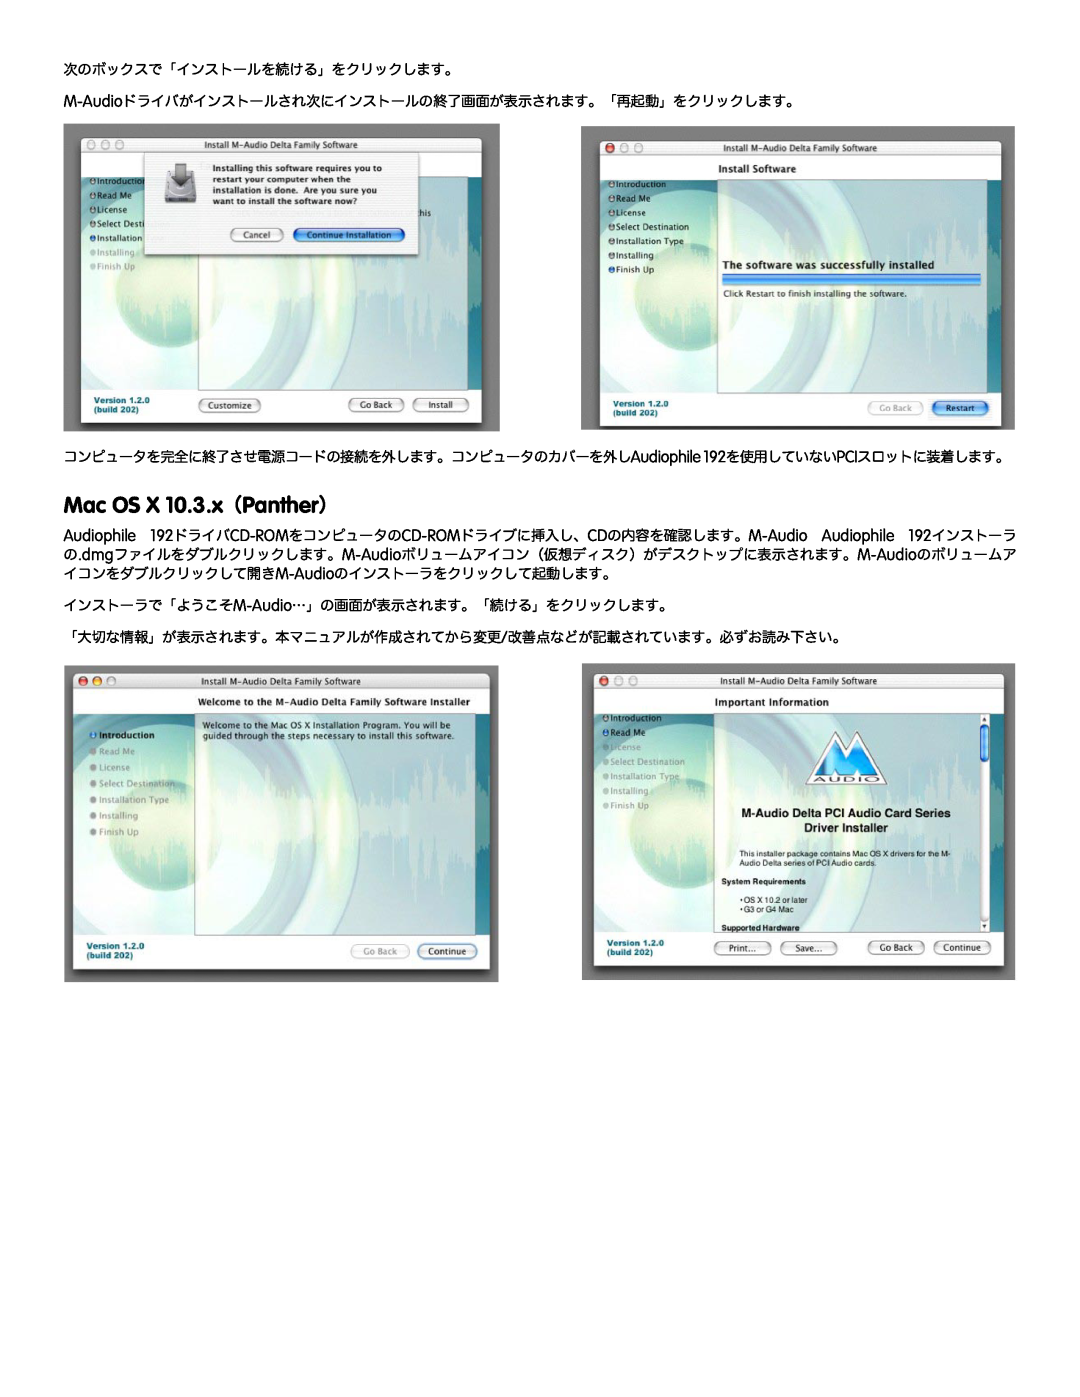 M-Audio 192 manual Mac OS X 10.3.x（Panther） 